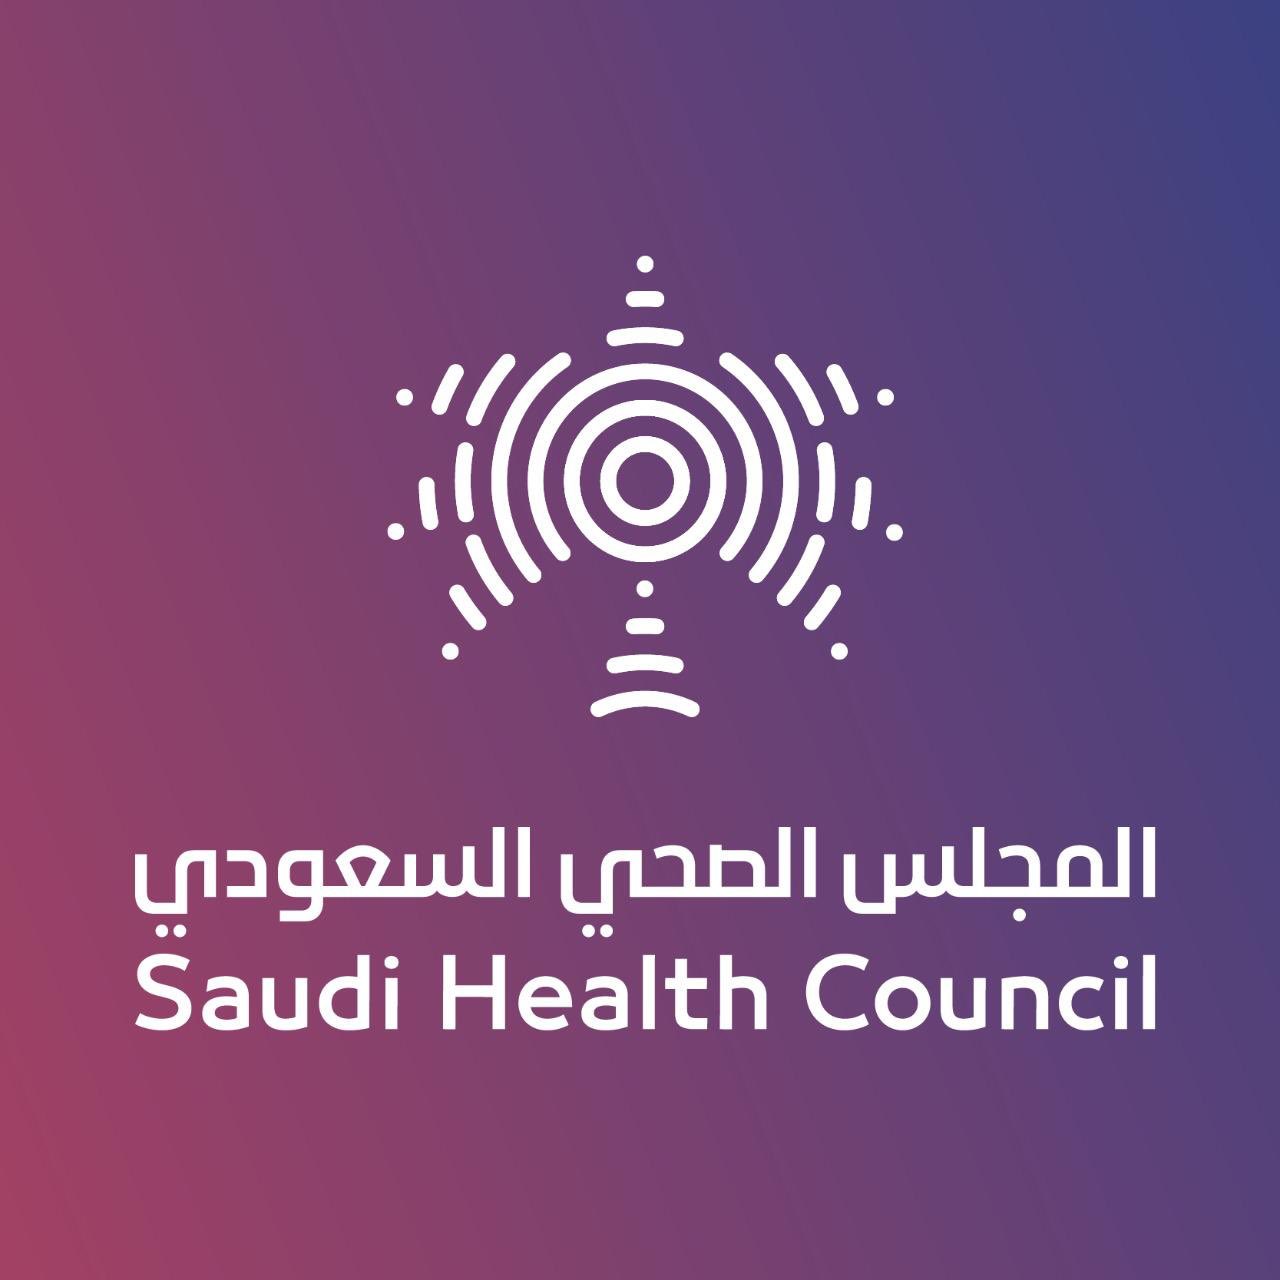 وظائف شاغرة يعلن عنها المجلس الصحي السعودي 